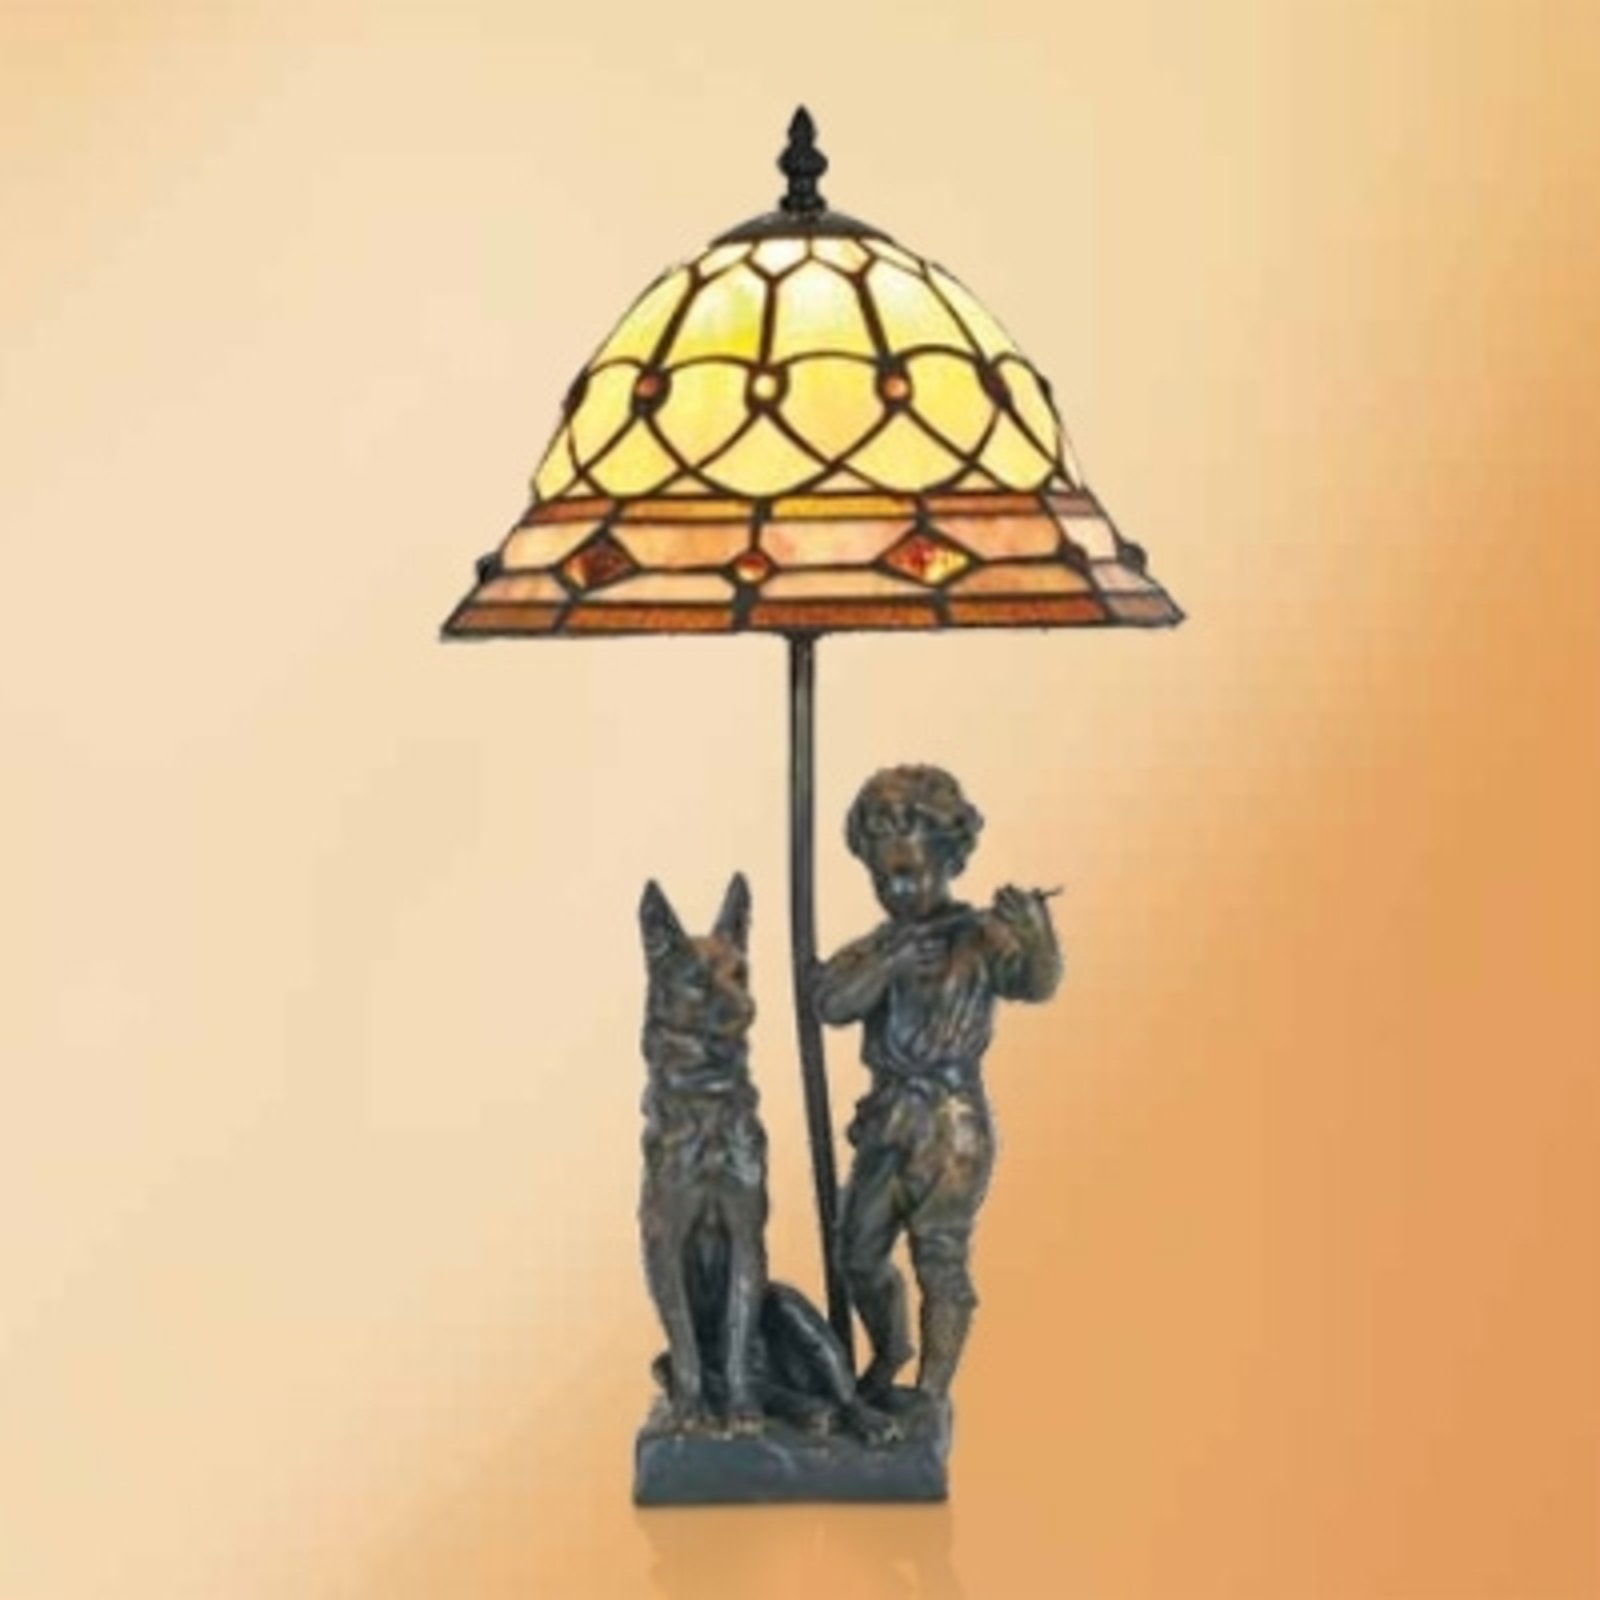 Hugo lampa stołowa w stylu Tiffany z figurkami